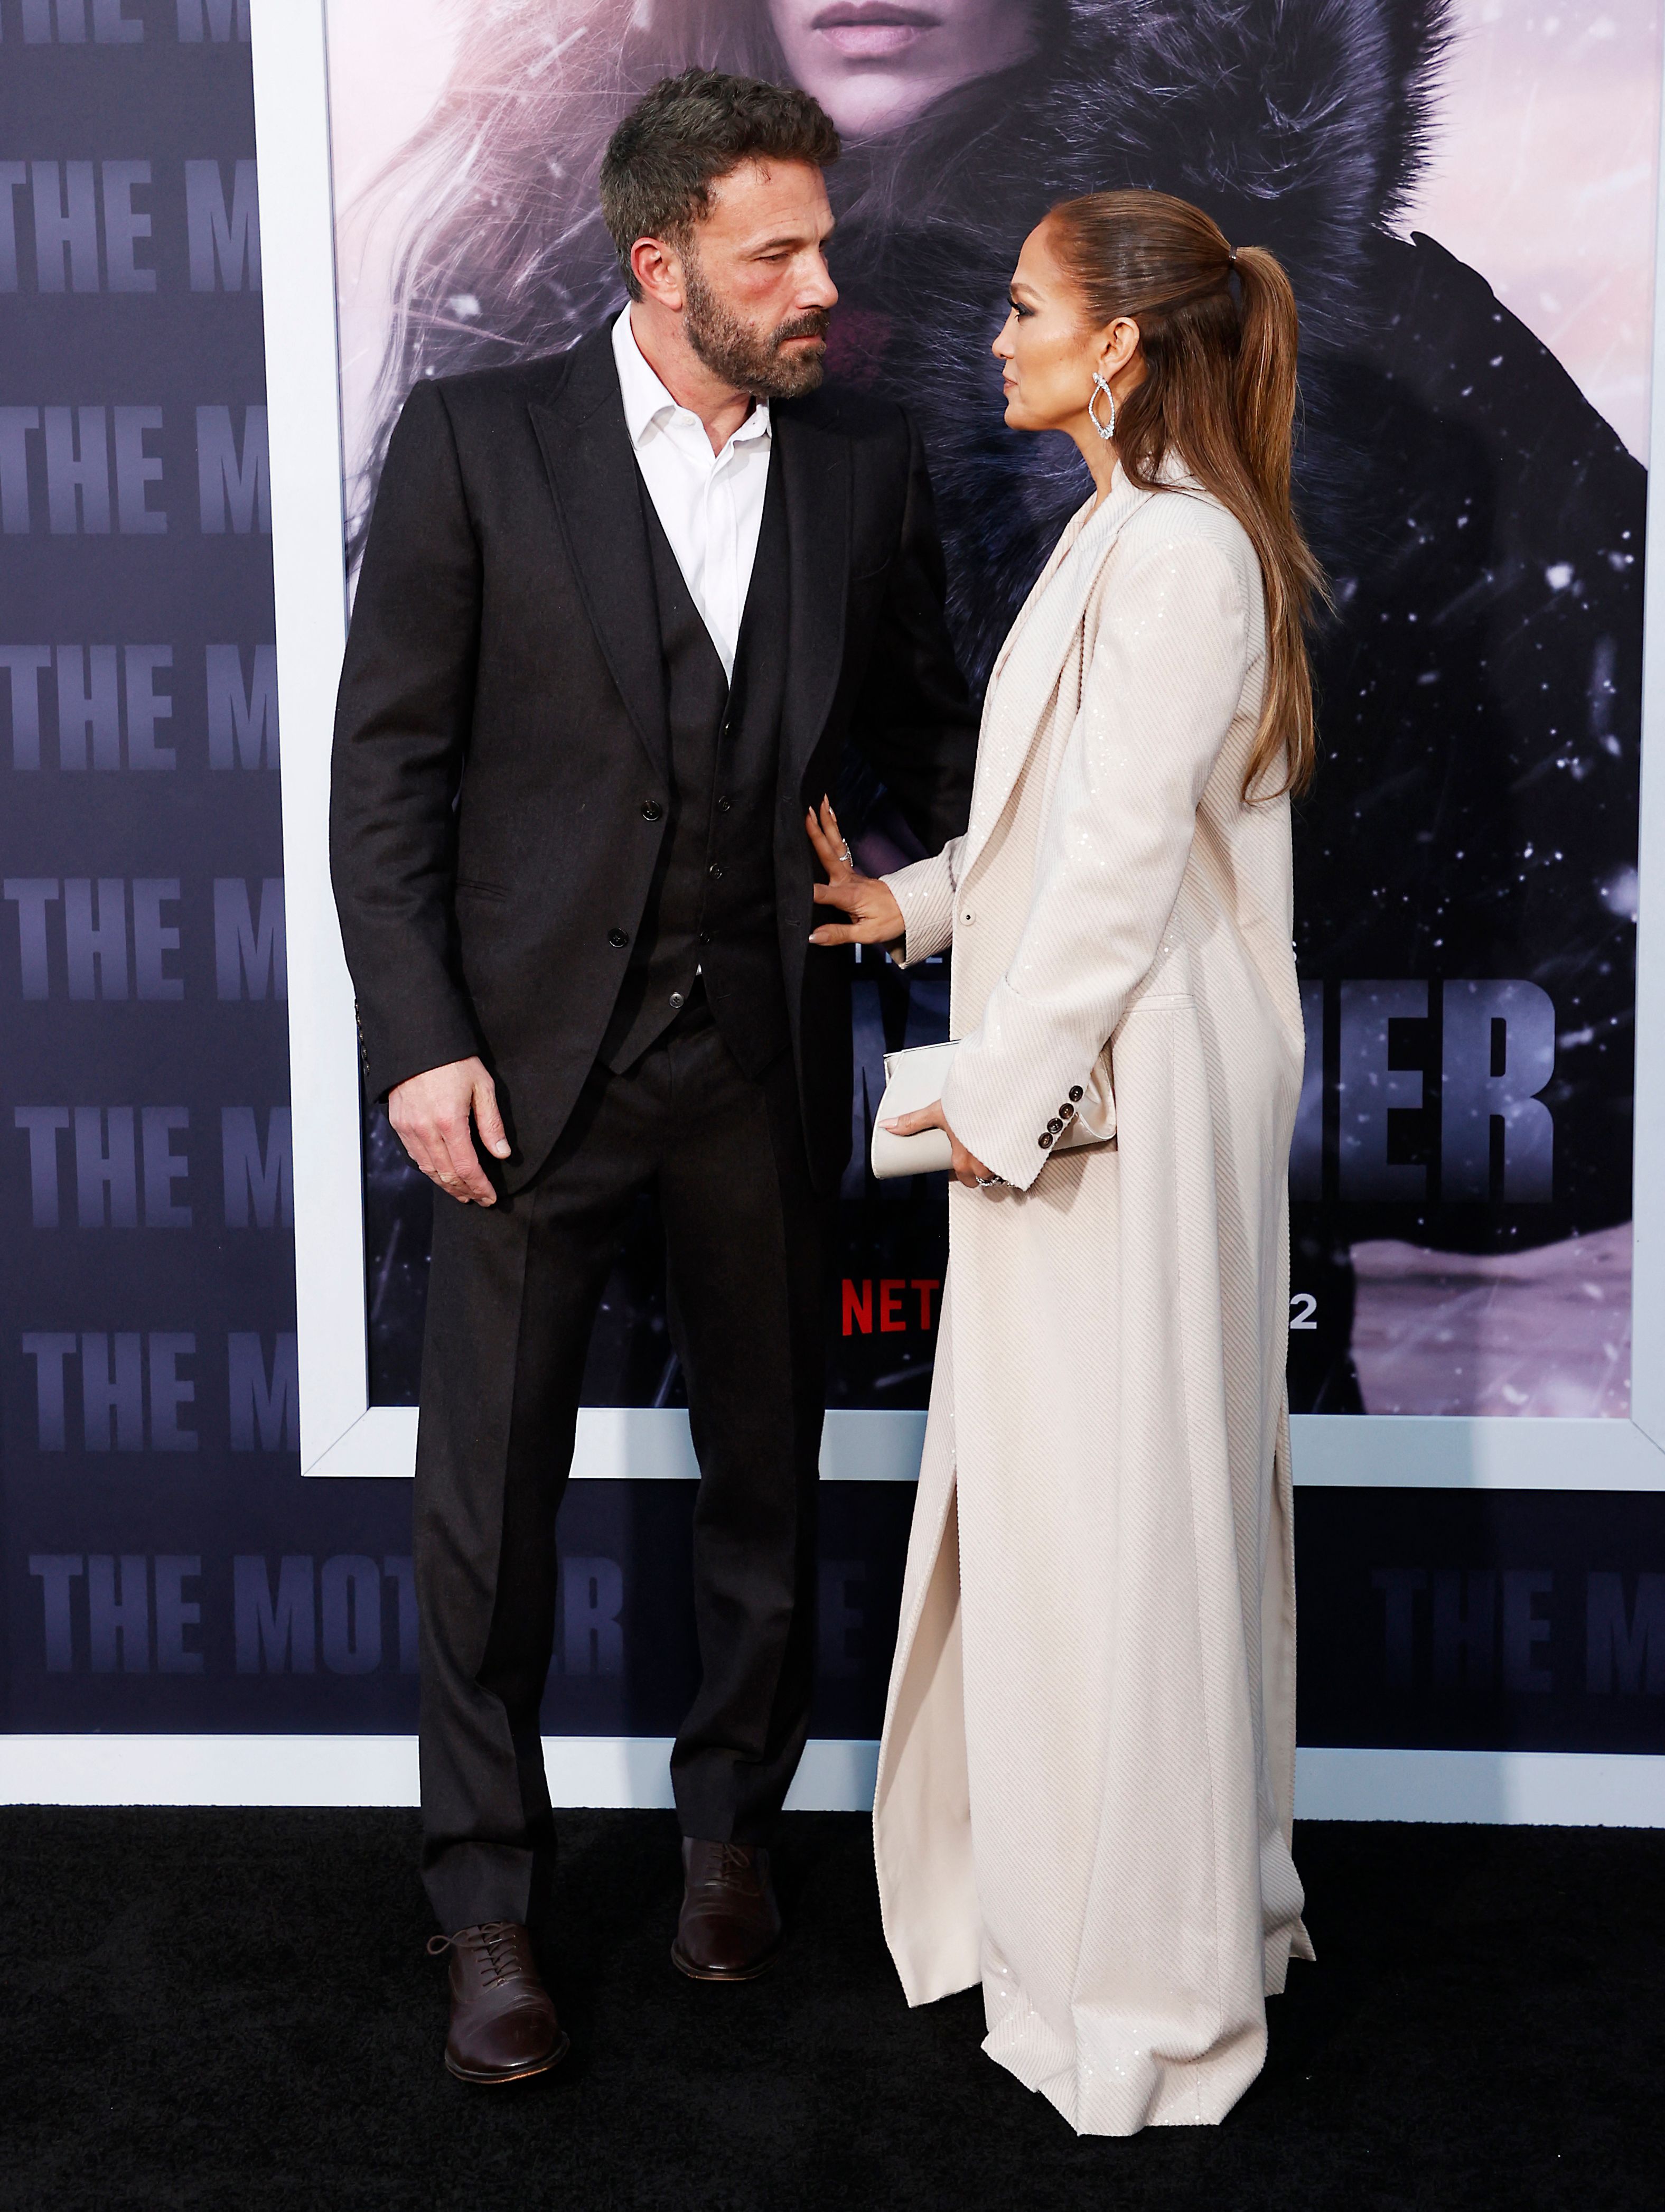 Ben Affleck y Jennifer Lopez en el estreno de "The Mother", el 10 de mayo de 2023, en Los Ángeles, California. | Foto: Getty Images